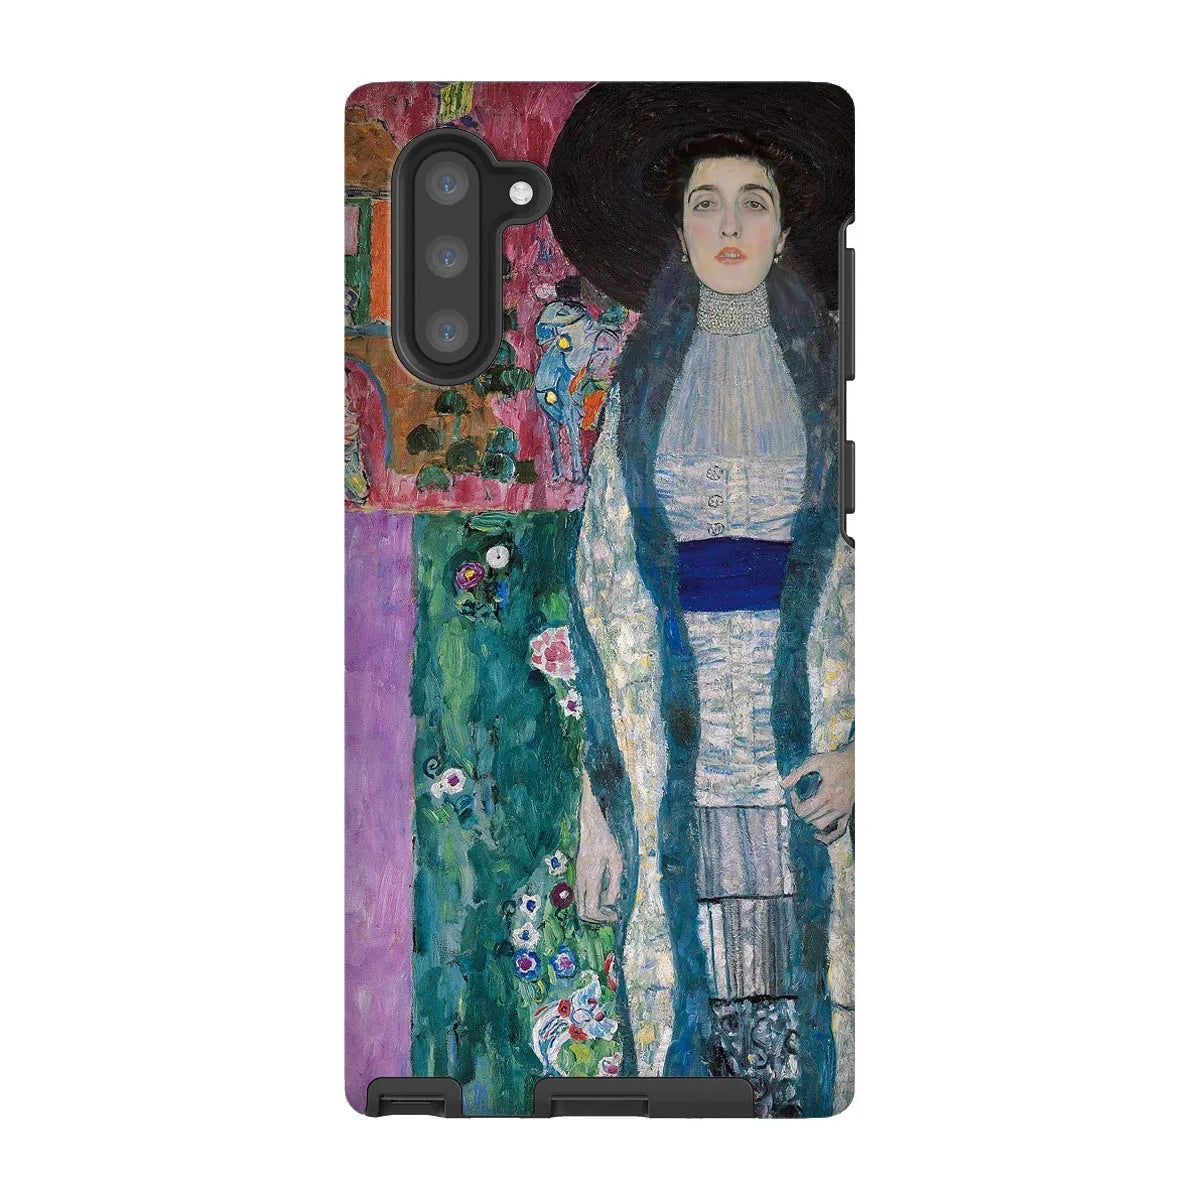 Adele Bloch-bauer - Gustav Klimt Portrait Art Phone Case - Samsung Galaxy Note 10 / Matte - Mobile Phone Cases